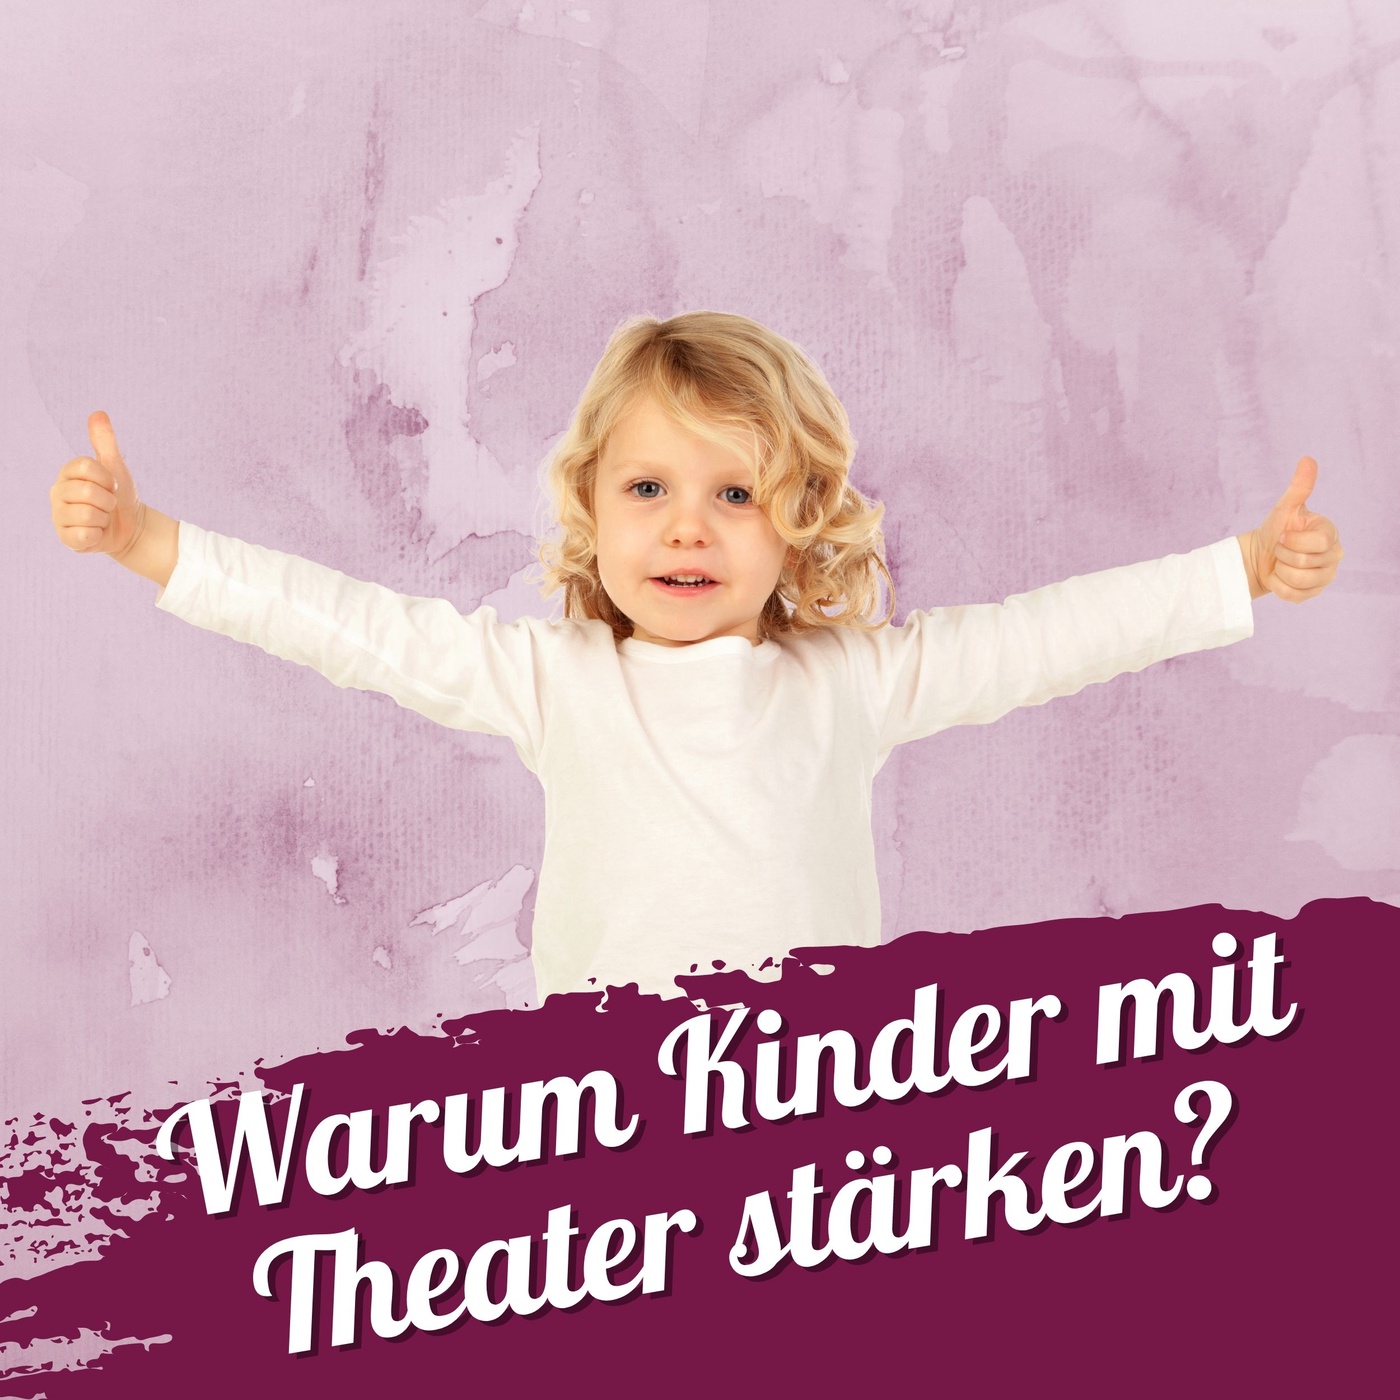 143 - warum Kinder mit Theater stärken?